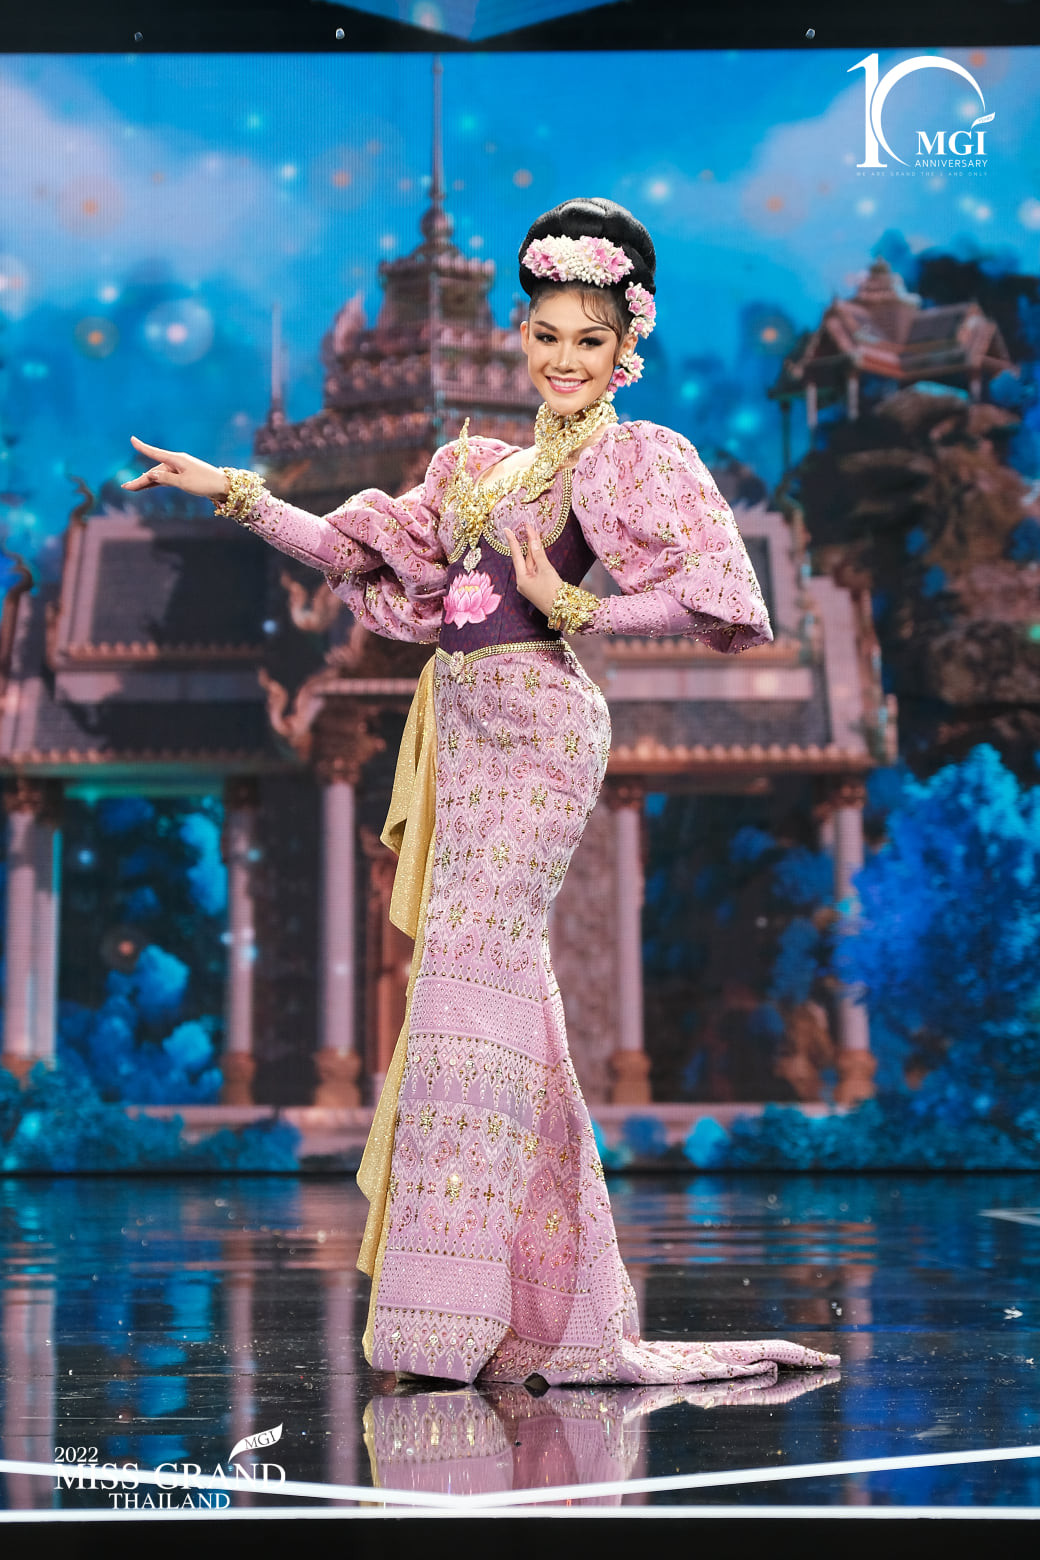 trajes tipicos de candidatas a miss grand thailand 2022. - Página 5 VtUm41